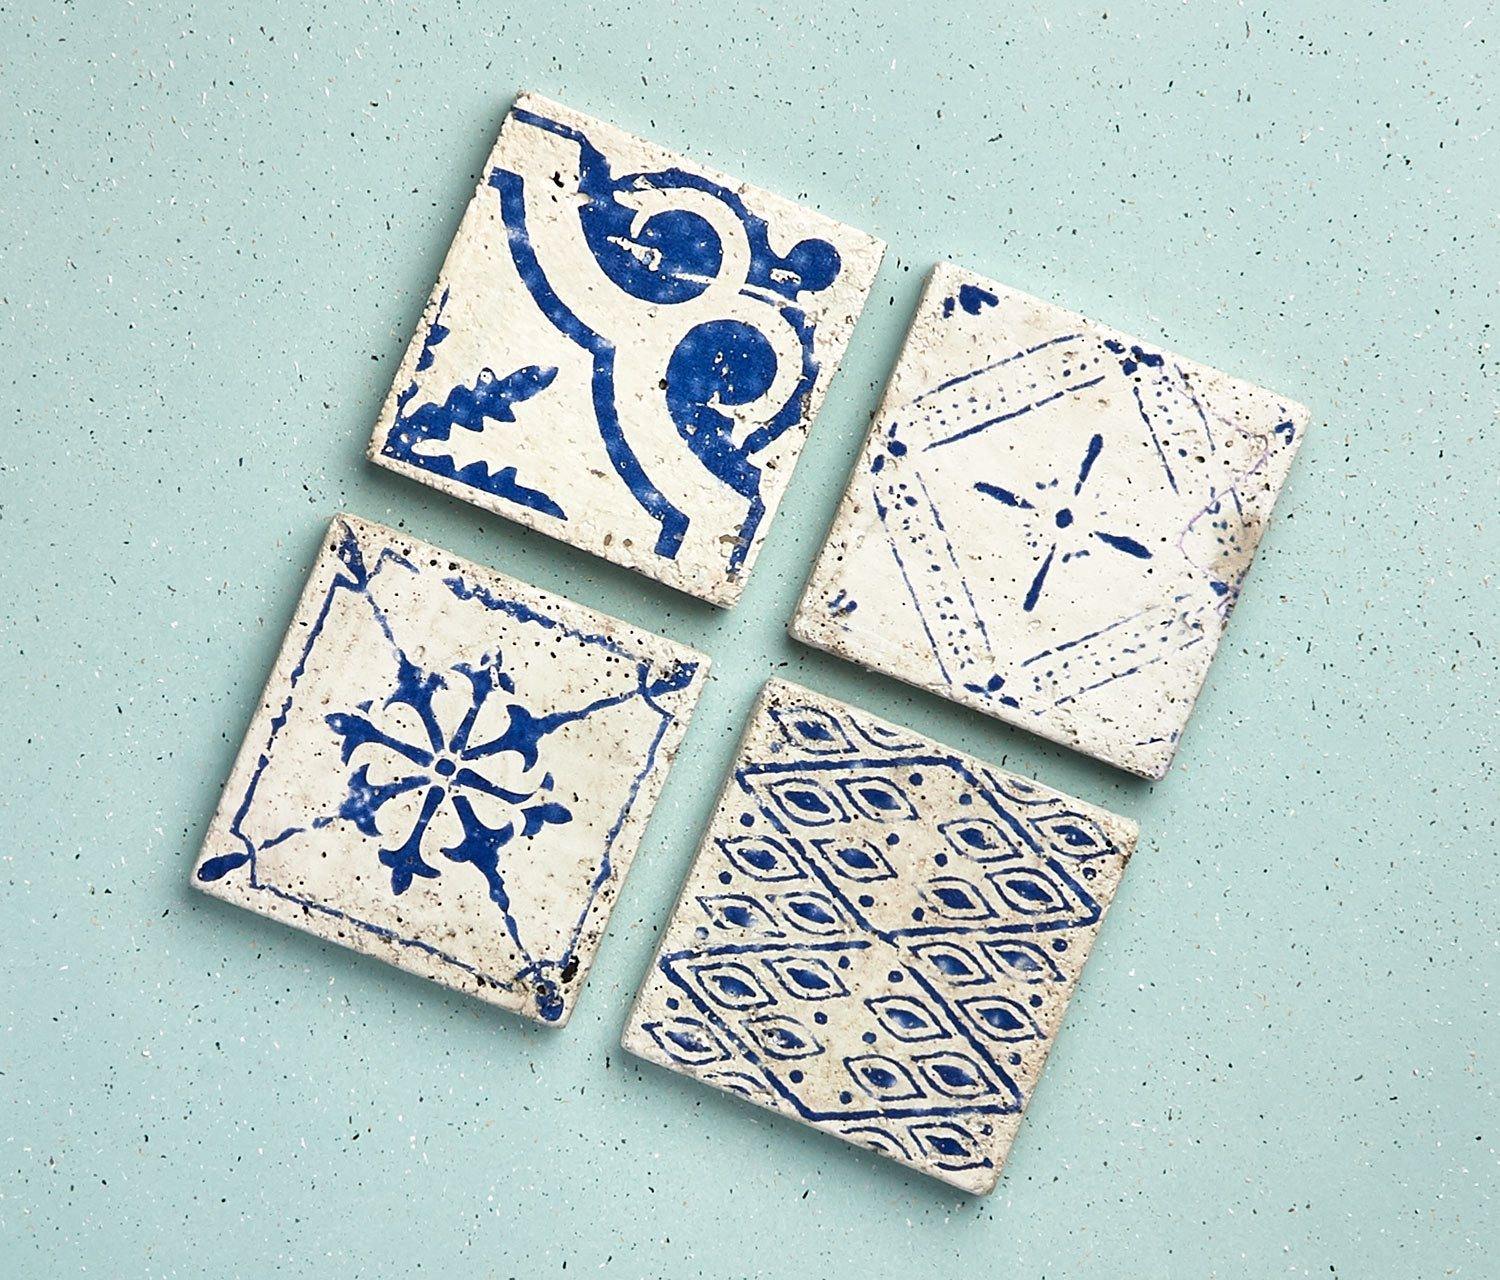 Taroudant Moroccan Tile Cement Square Coasters